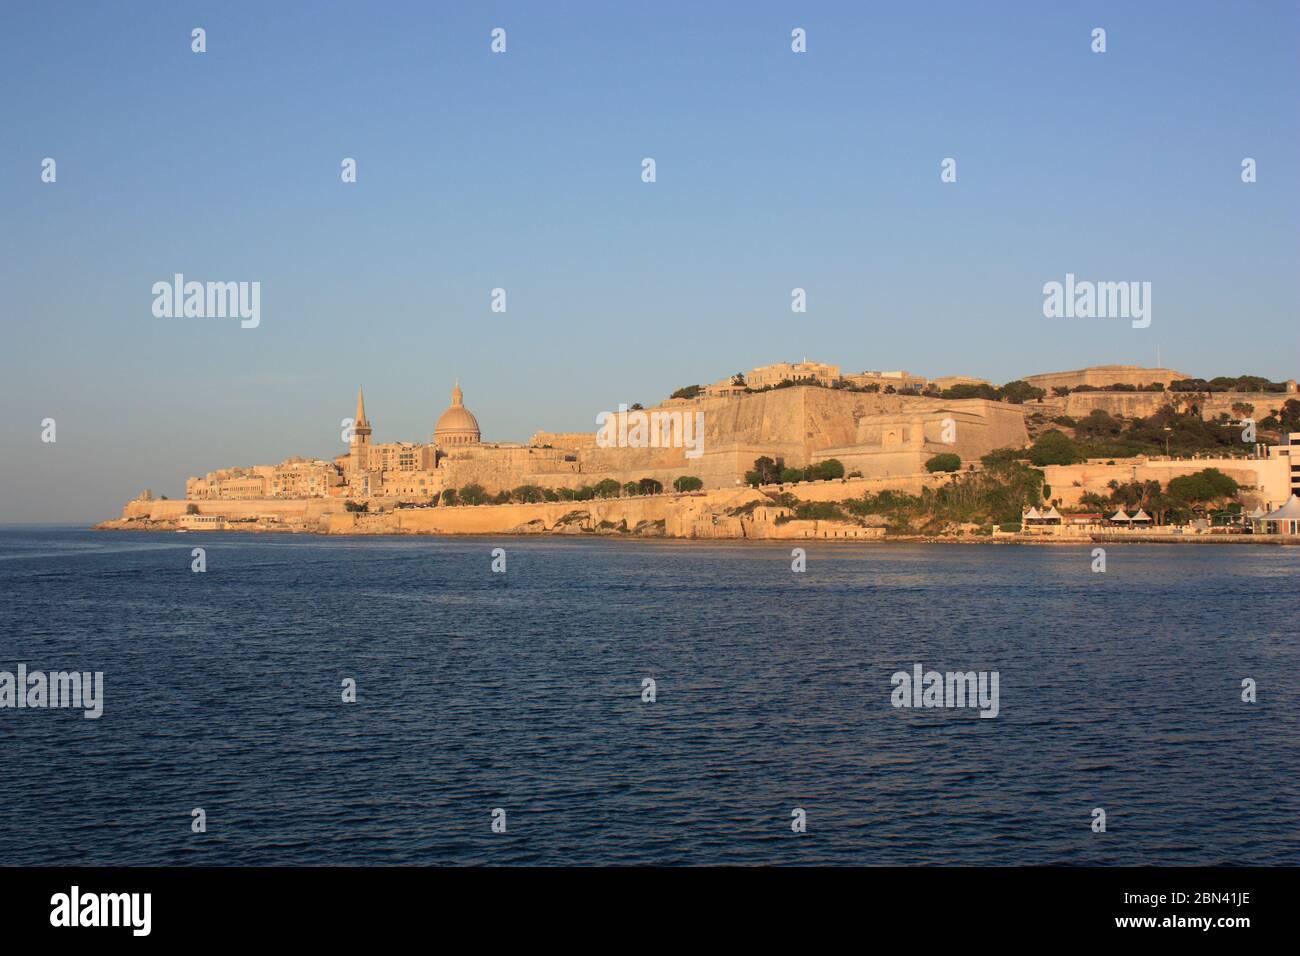 Valletta, Malta, una ciudad fortificada europea histórica y destino turístico popular en el Mar Mediterráneo, como se ve desde Marsamxett al atardecer Foto de stock